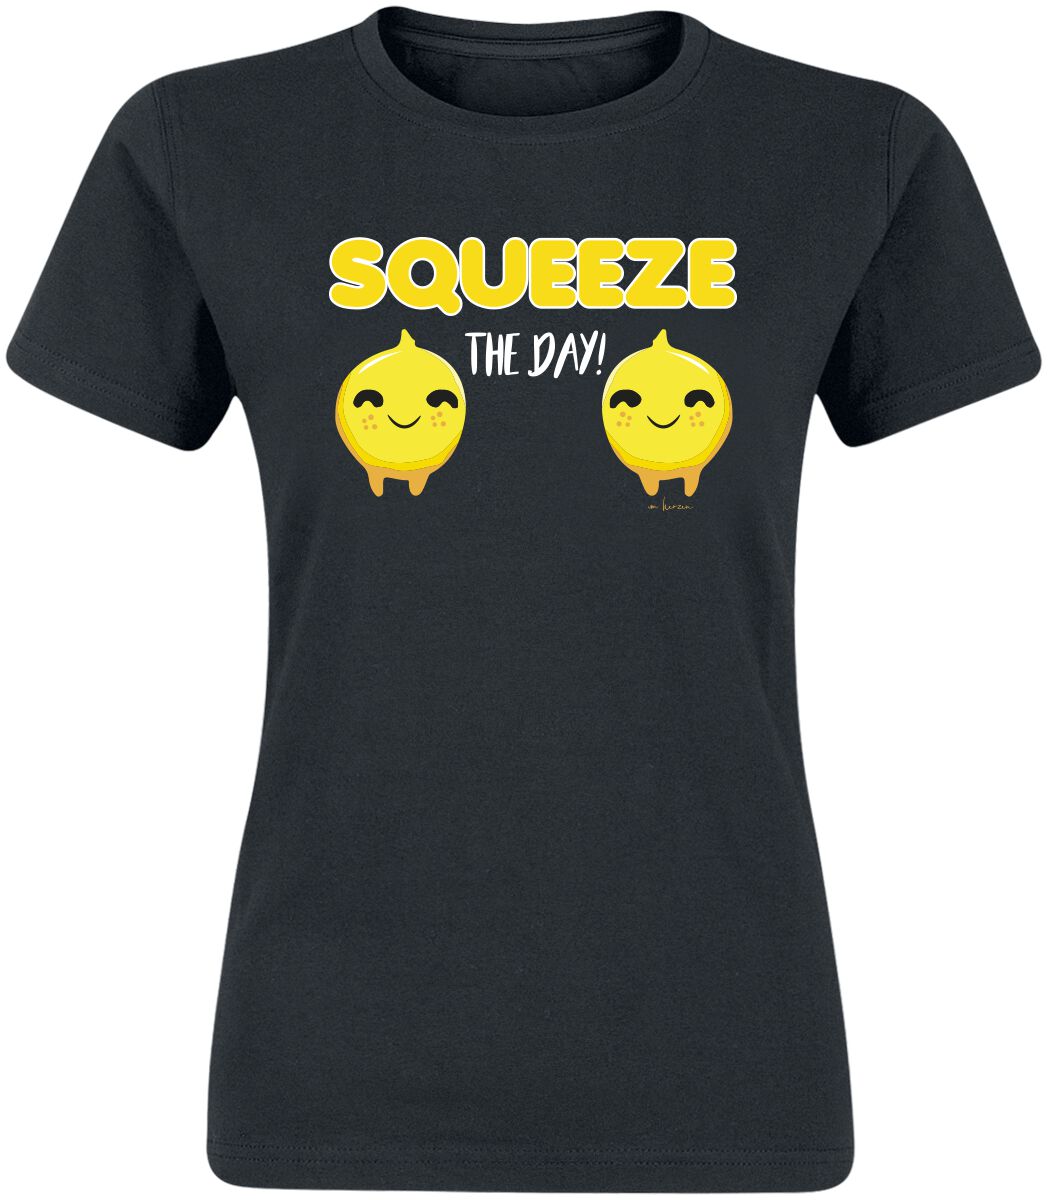 Sprüche T-Shirt - Squeeze The Day! - S bis XXL - für Damen - Größe M - schwarz